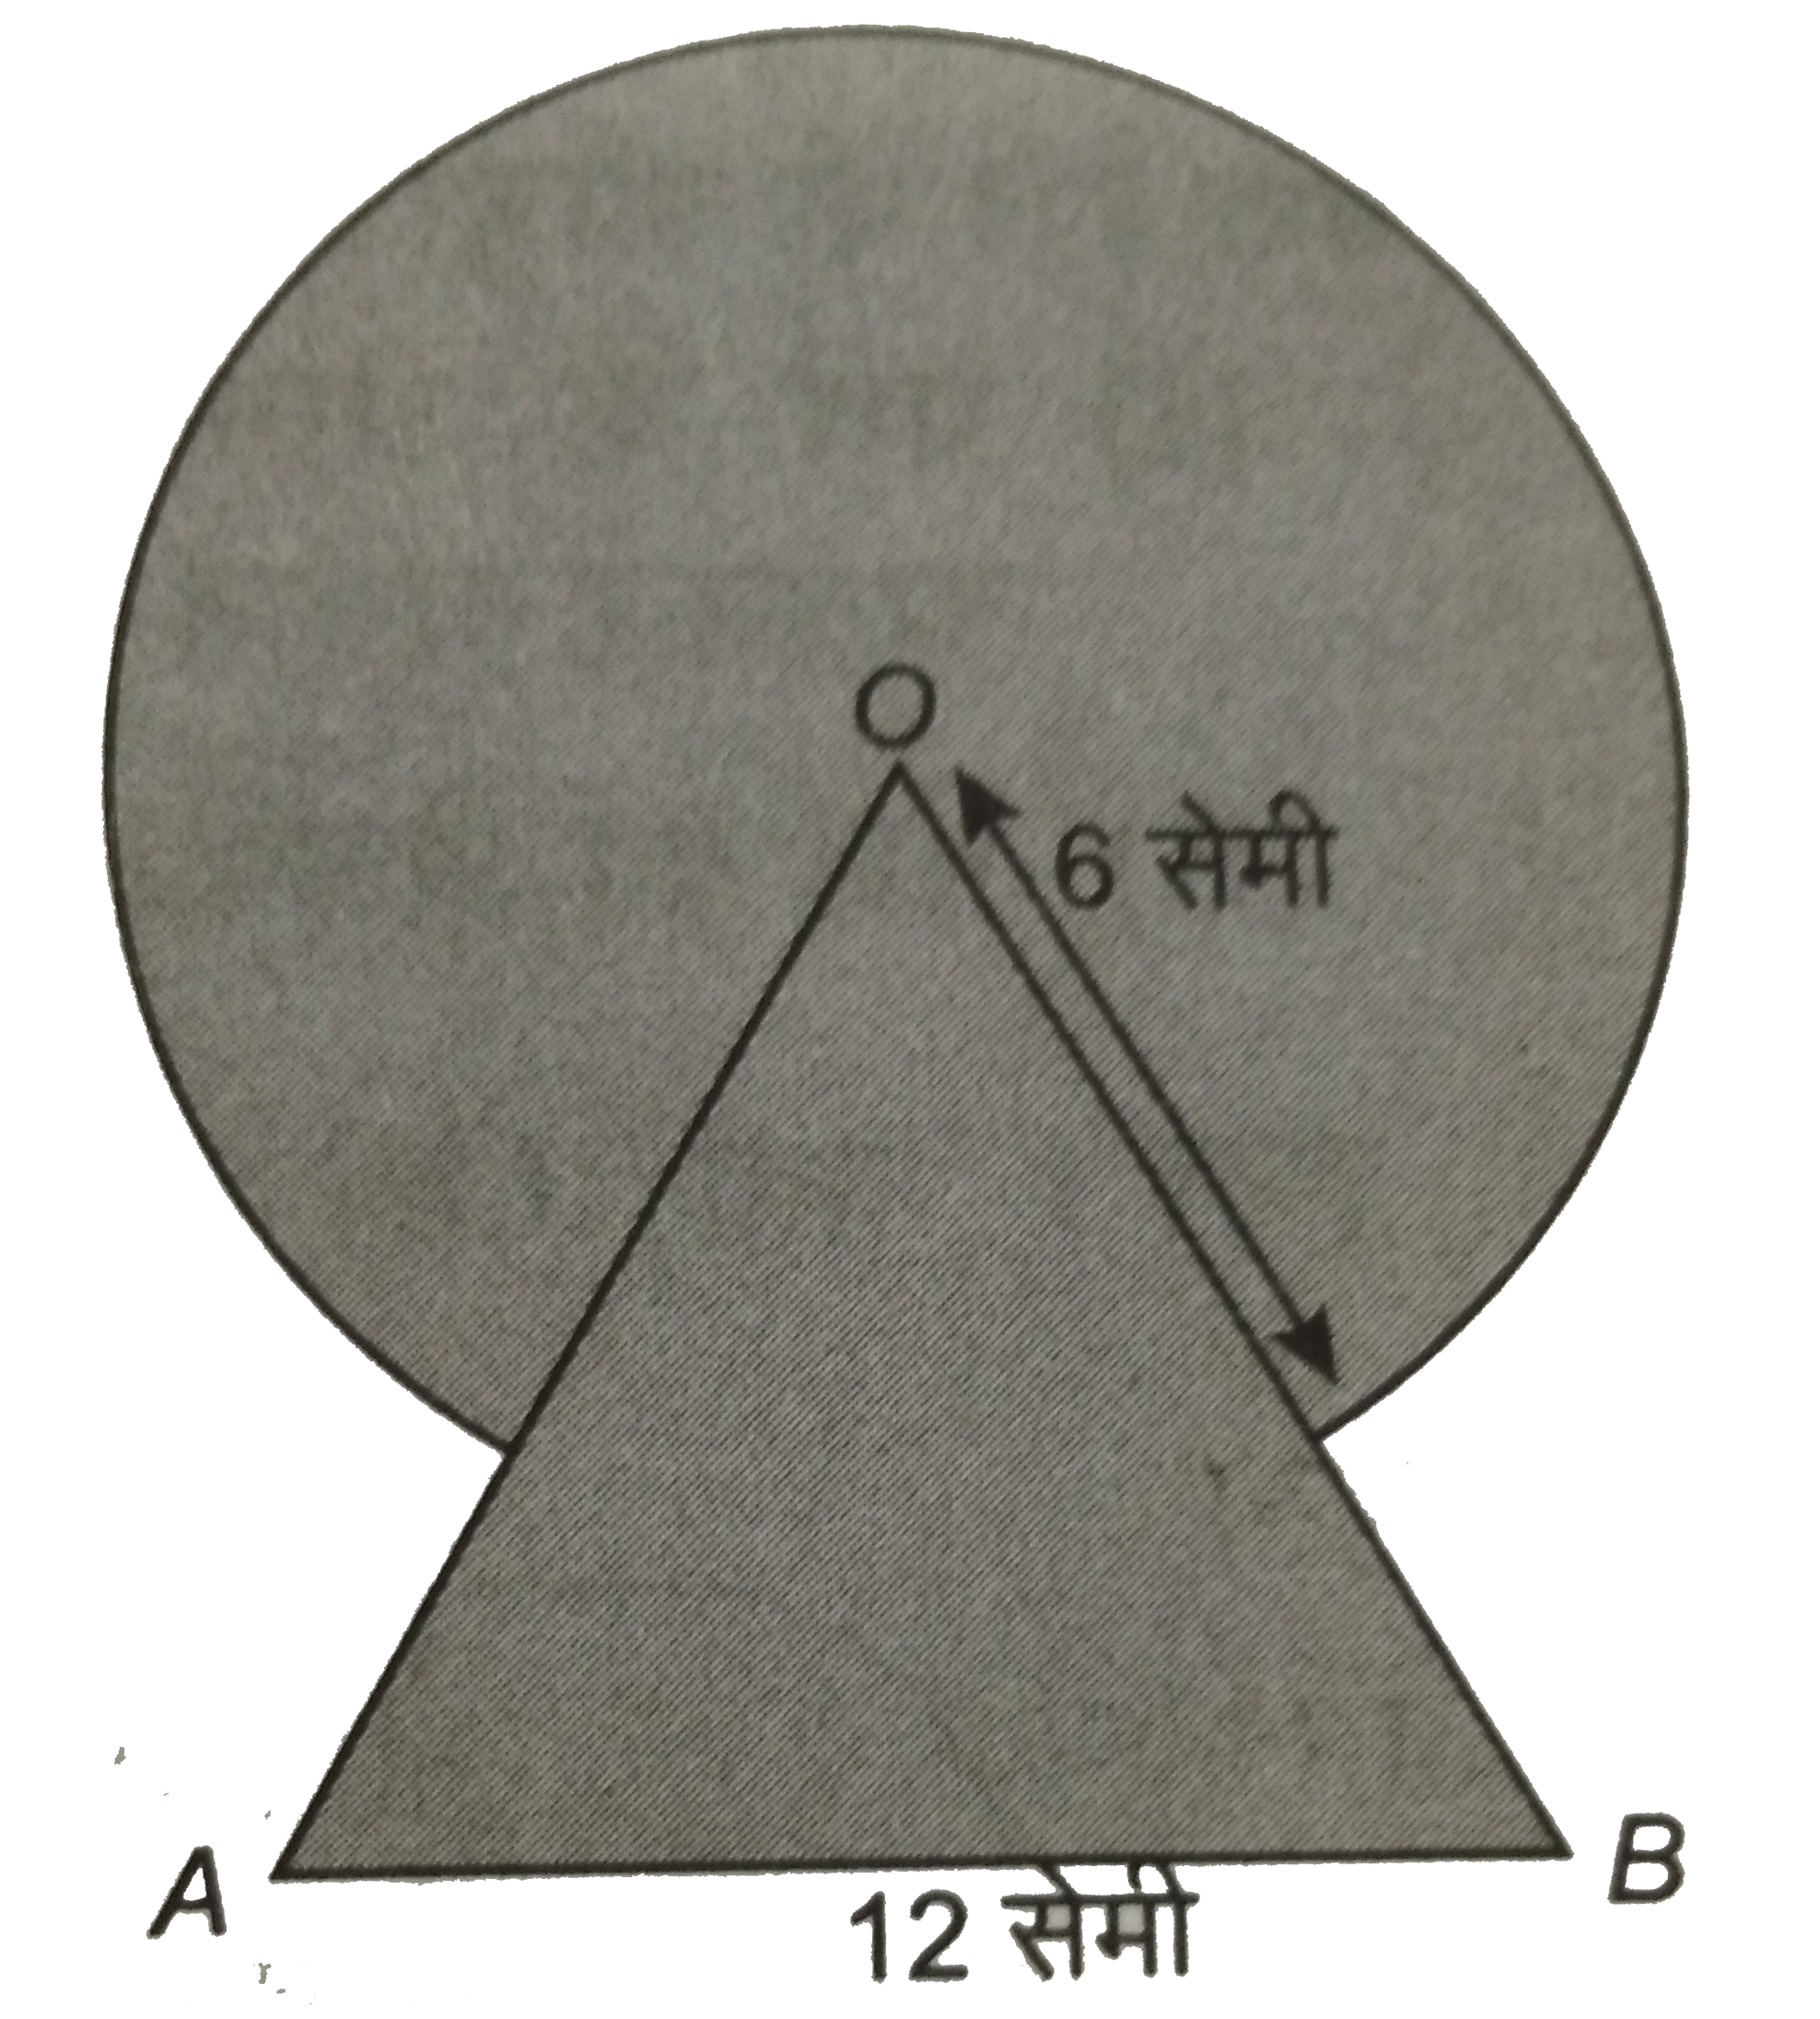 आकृति  में , छायांकित  भाग का क्षेत्रफल  ज्ञात कीजिए , जहाँ भुजा  12  सेमी वाले एक समबाहु  त्रिभुज  OAB के शीर्ष  O  को केंद्र  मान कर 6  सेमी त्रिज्या वाला एक  वृत्तीय चाप खींचा गया है ।